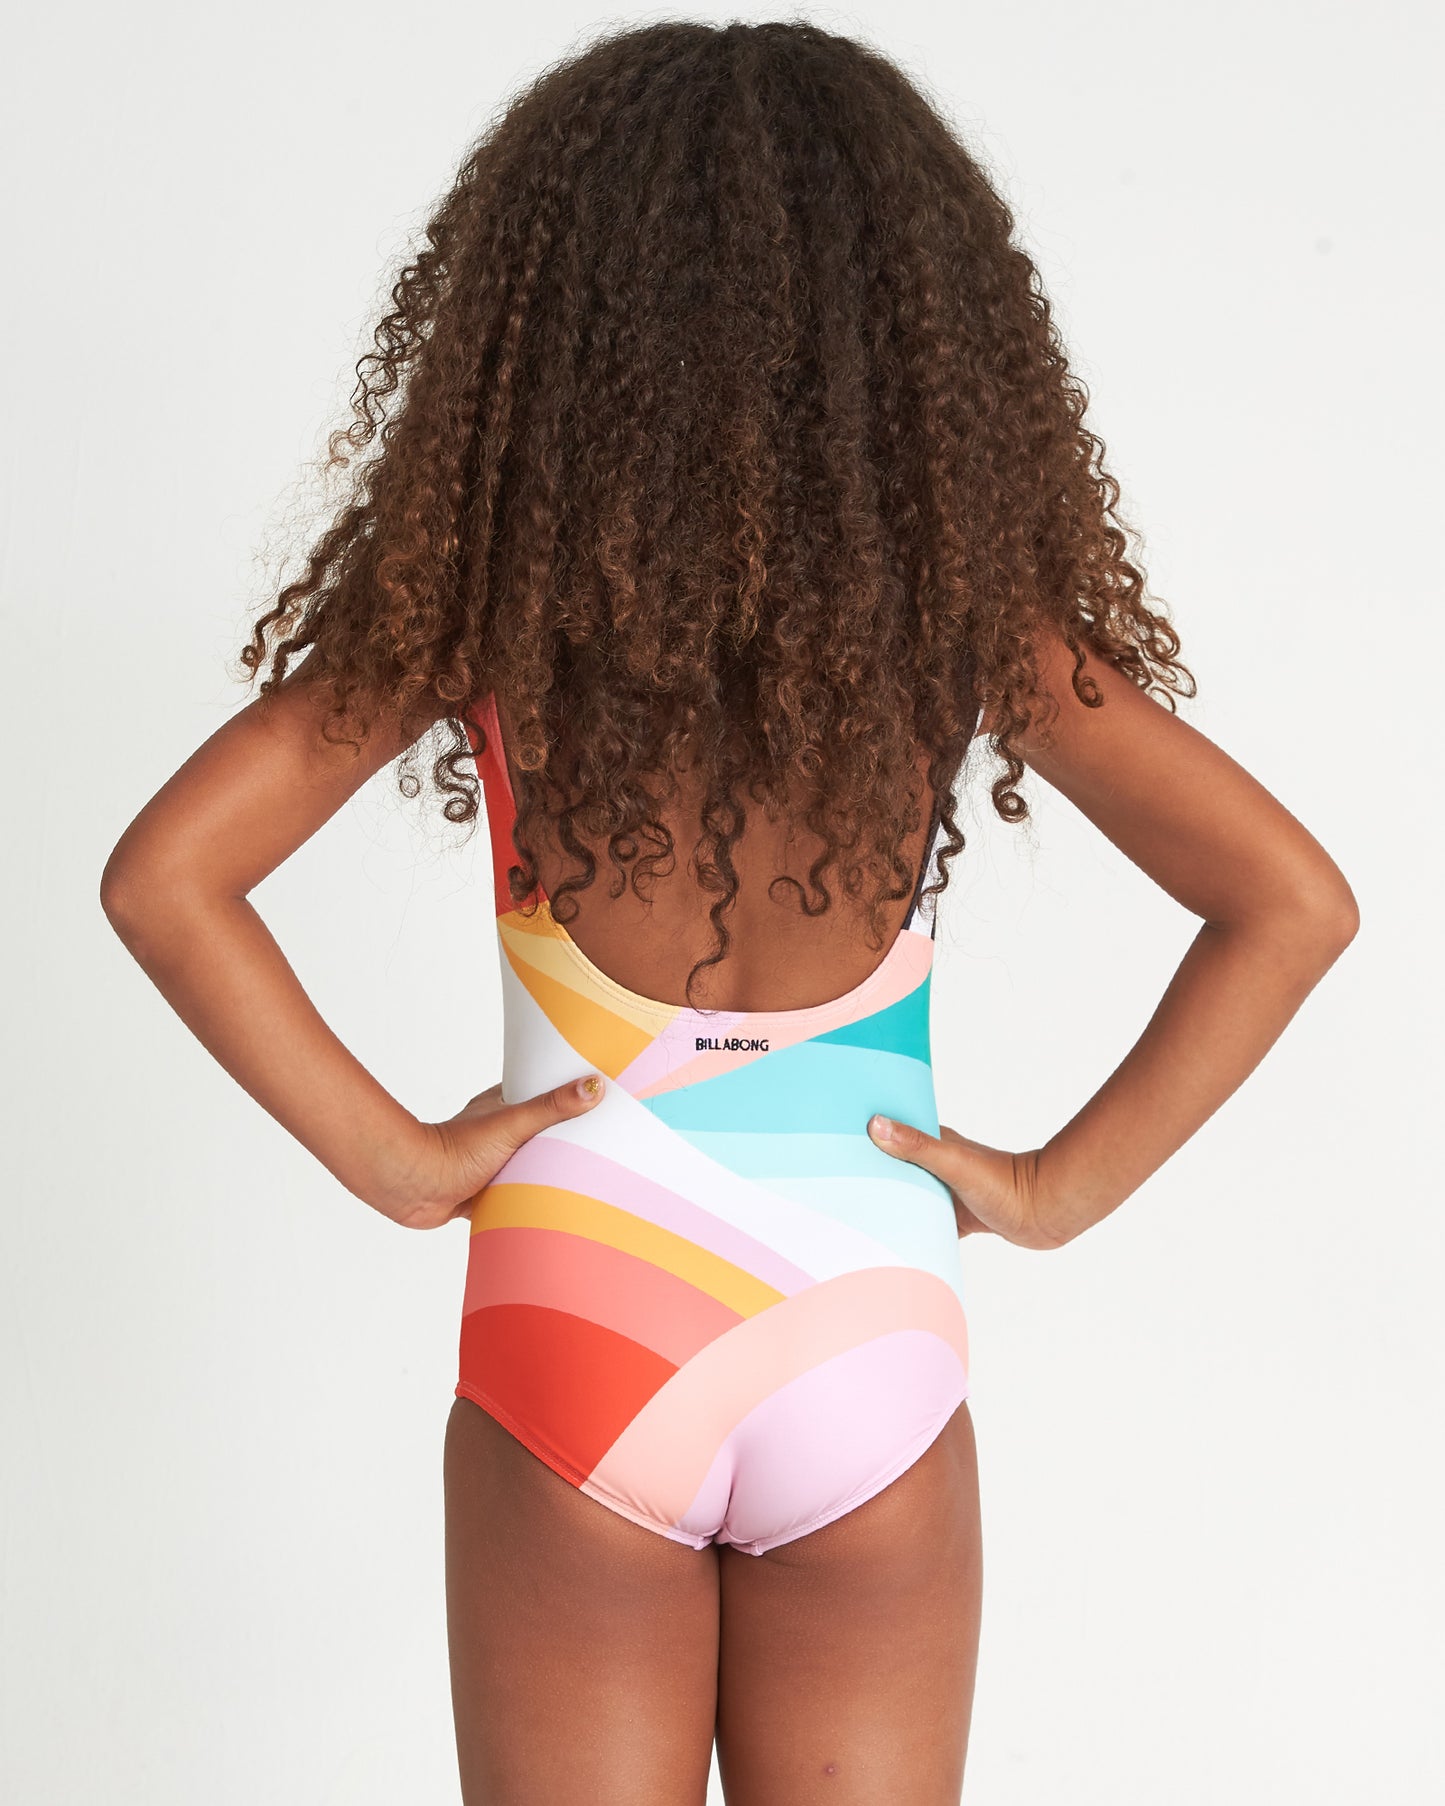 Billabong Easy on Me Girls 1 Piece Swimsuit - Multi youth swimwear